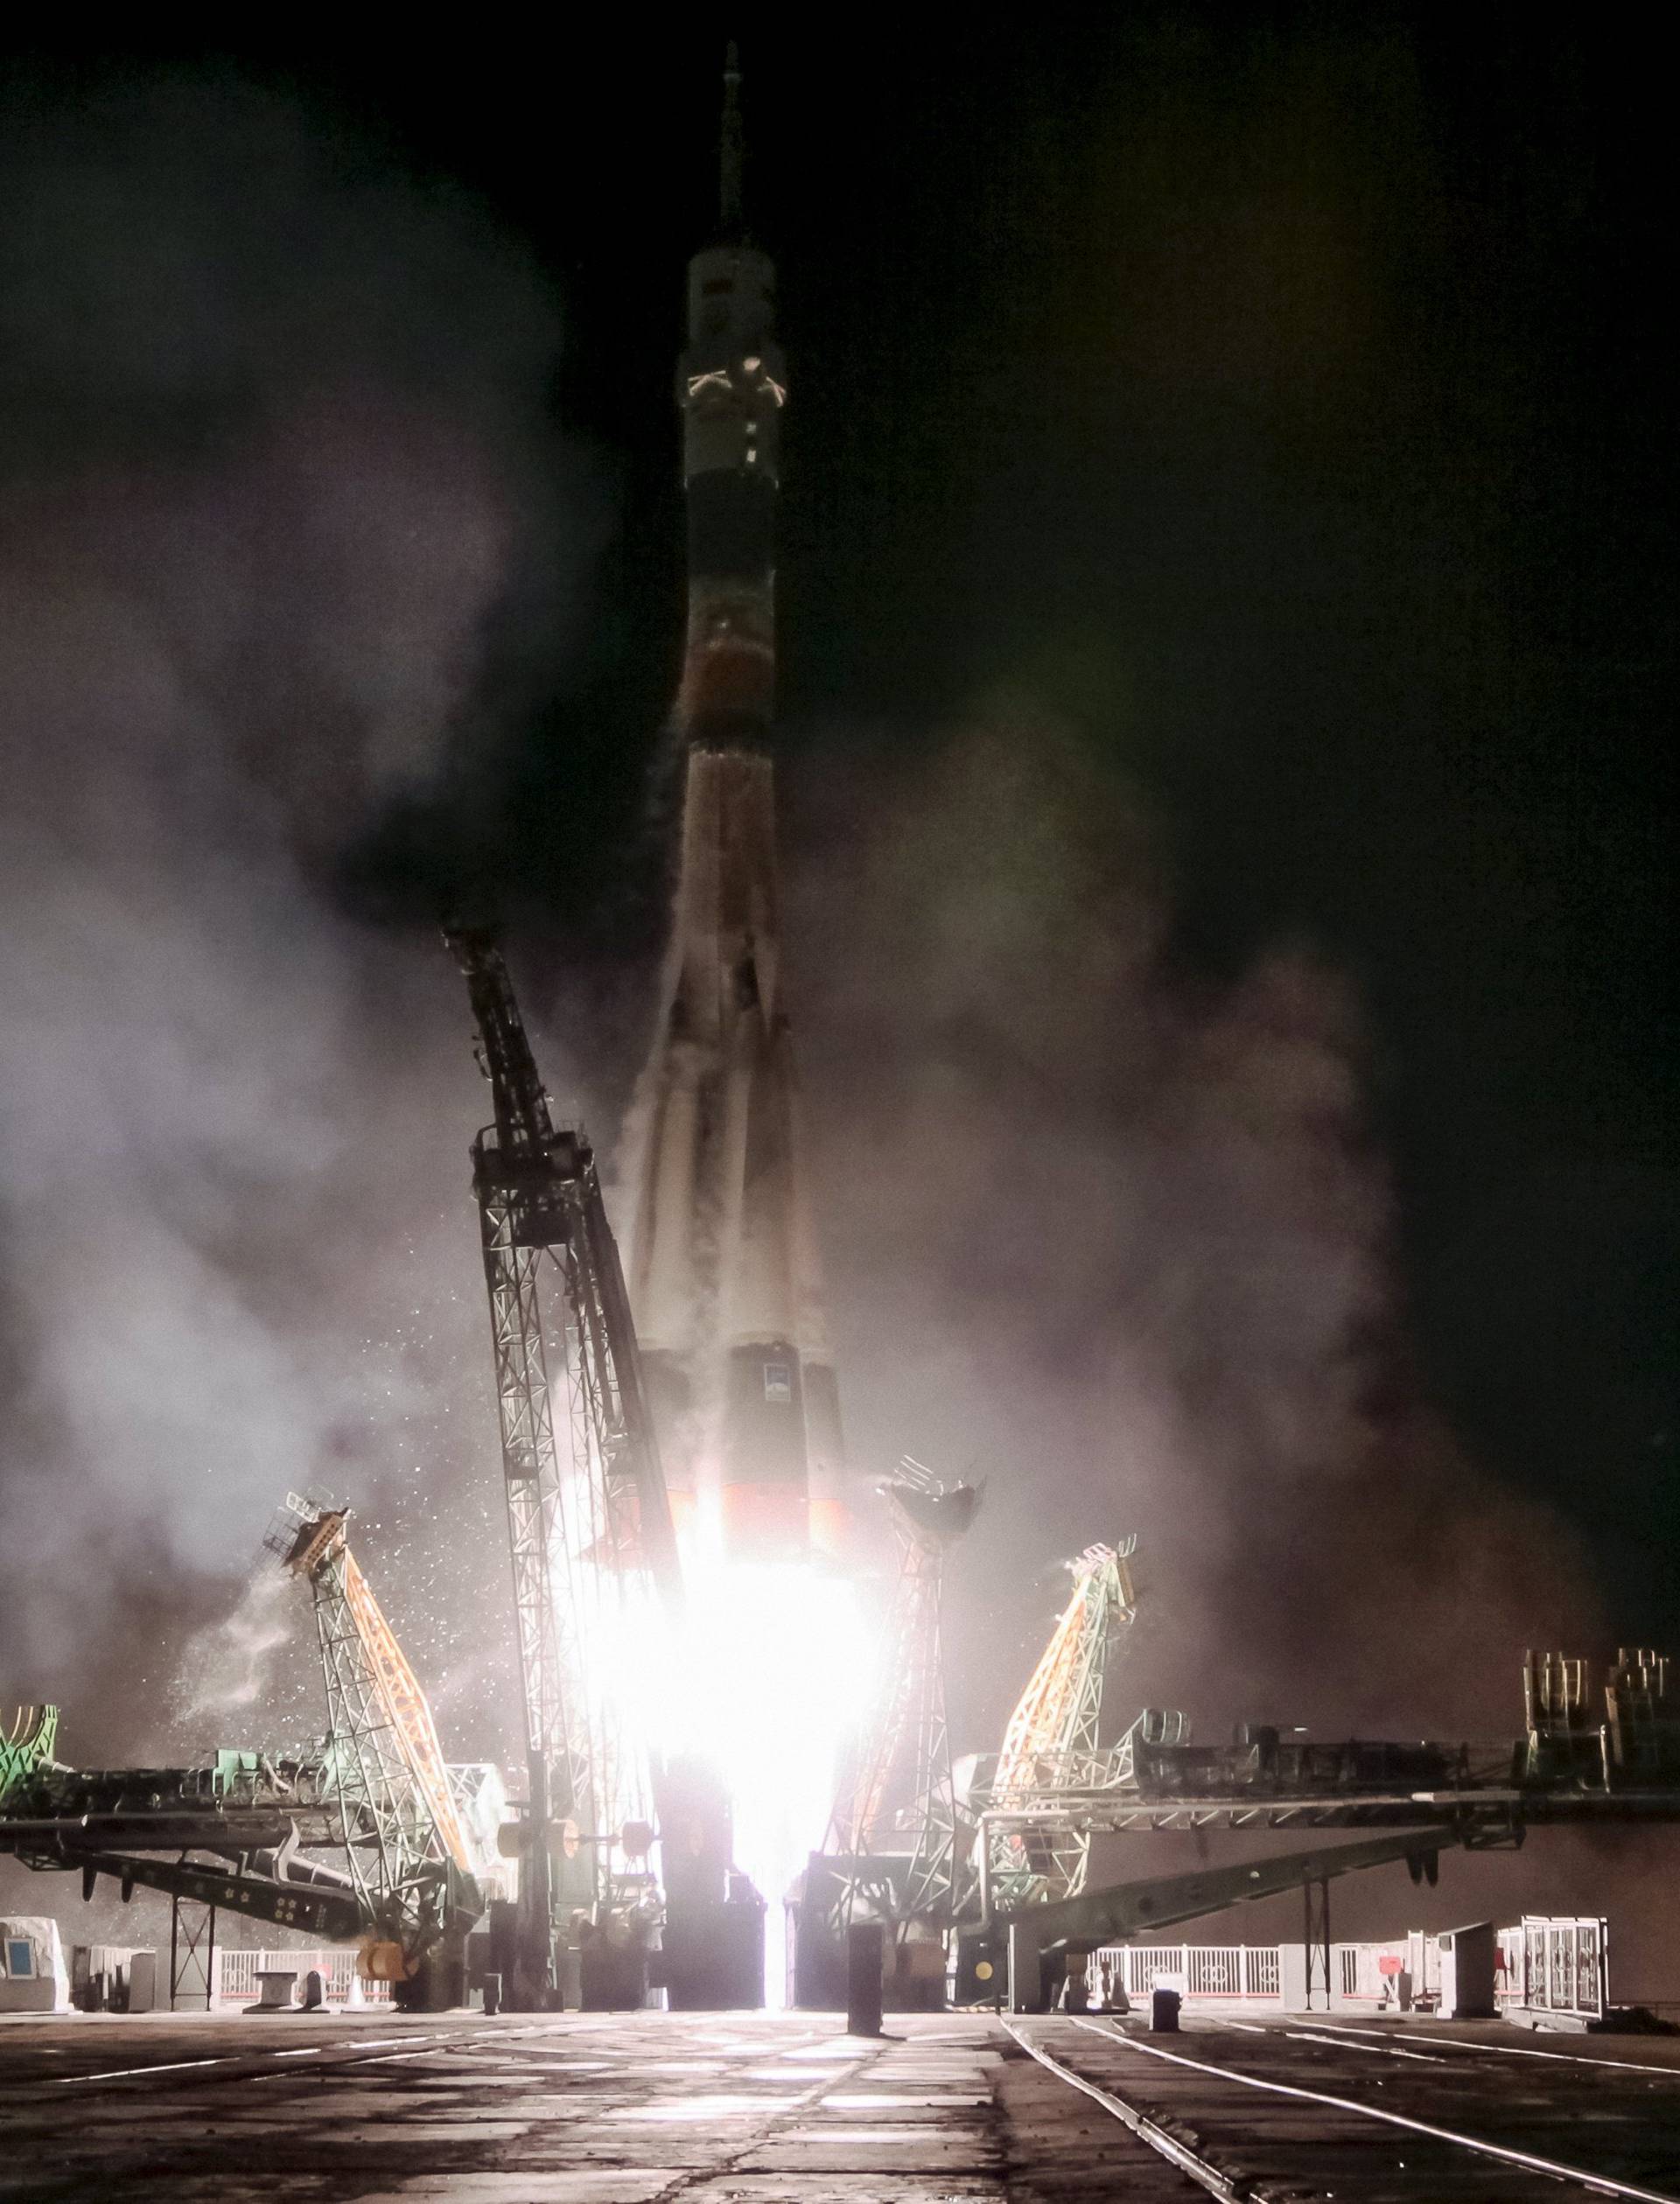 Svježe snage: Američko-ruska posada doputovala je na ISS